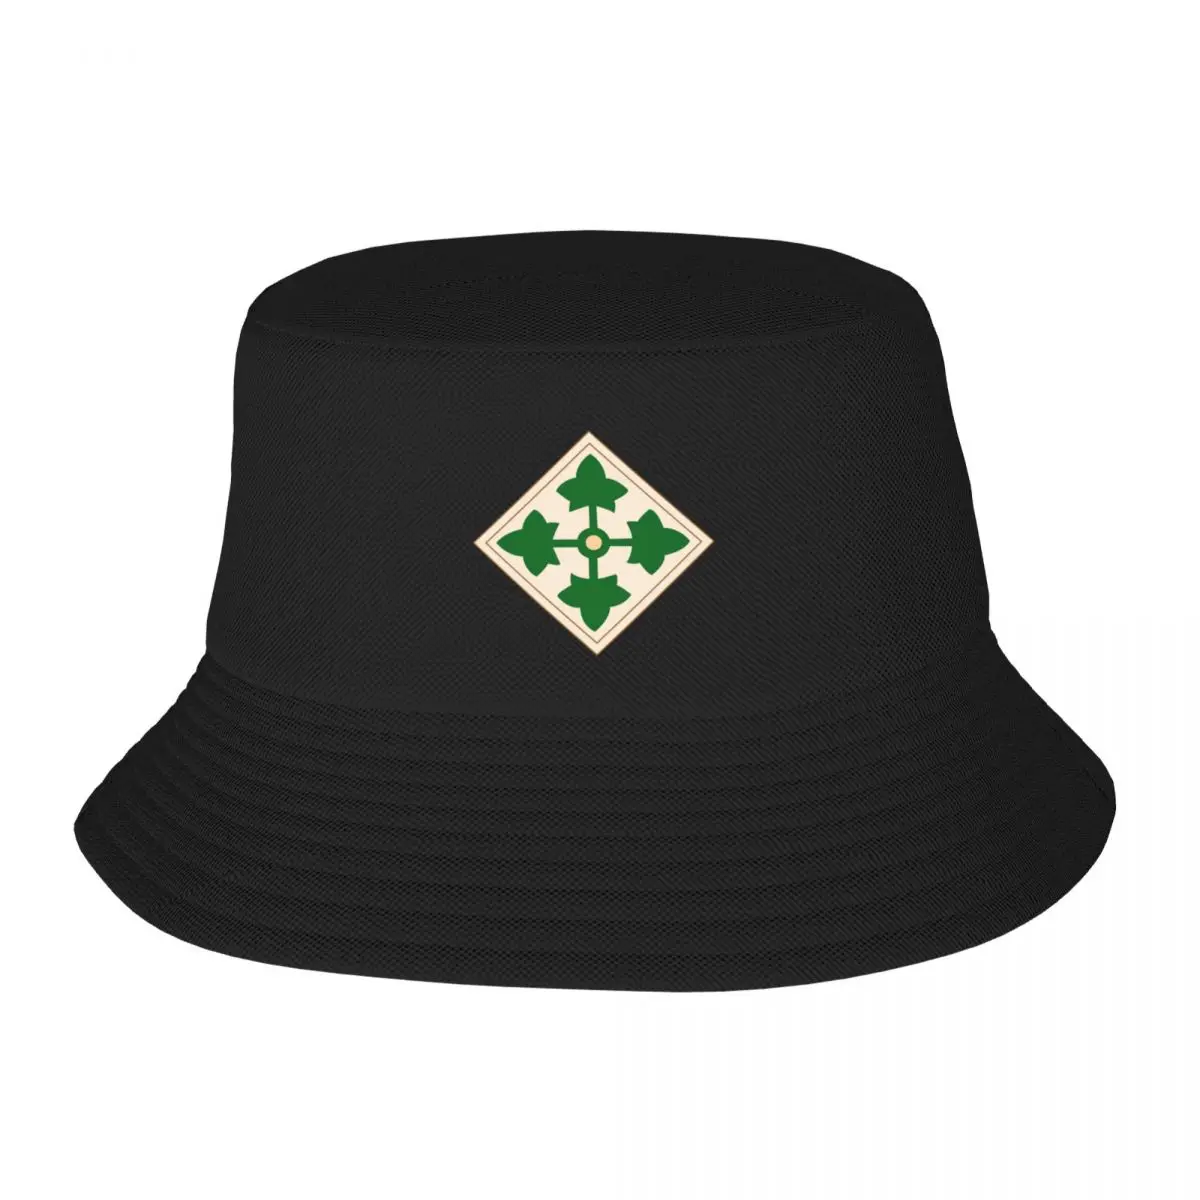 Nuevo Ejército - 4ª División de Infantería wo Txt Sombrero de Cubo de Snap Back Sombrero de Golf de Lujo Cap Sombrero Masculino de la Mujer . ' - ' . 0